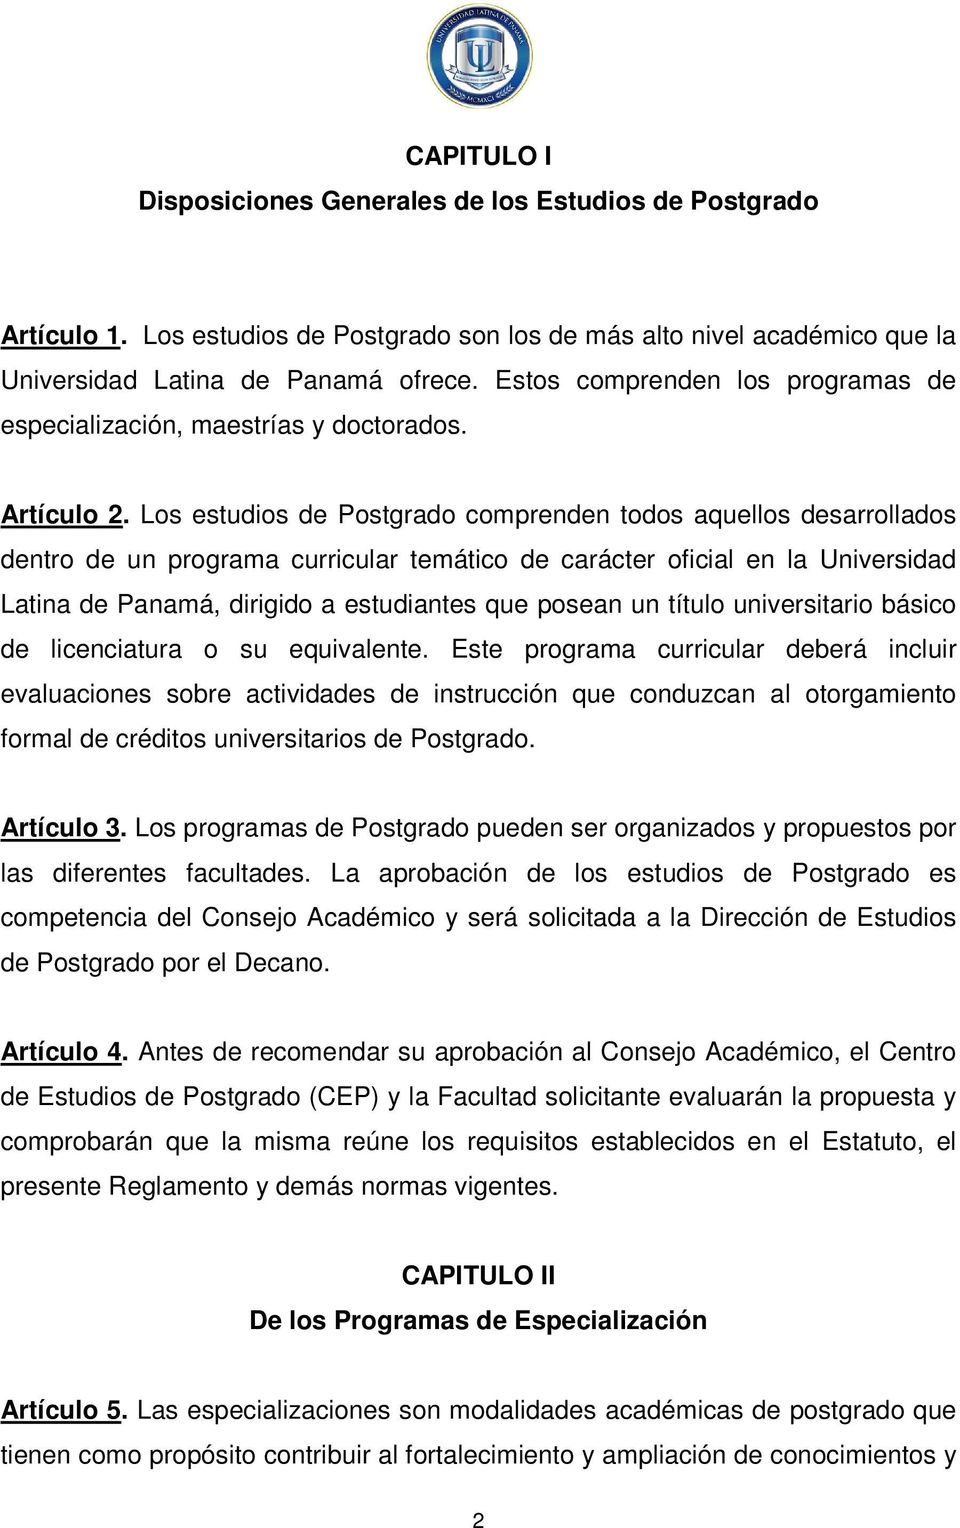 Los estudios de Postgrado comprenden todos aquellos desarrollados dentro de un programa curricular temático de carácter oficial en la Universidad Latina de Panamá, dirigido a estudiantes que posean